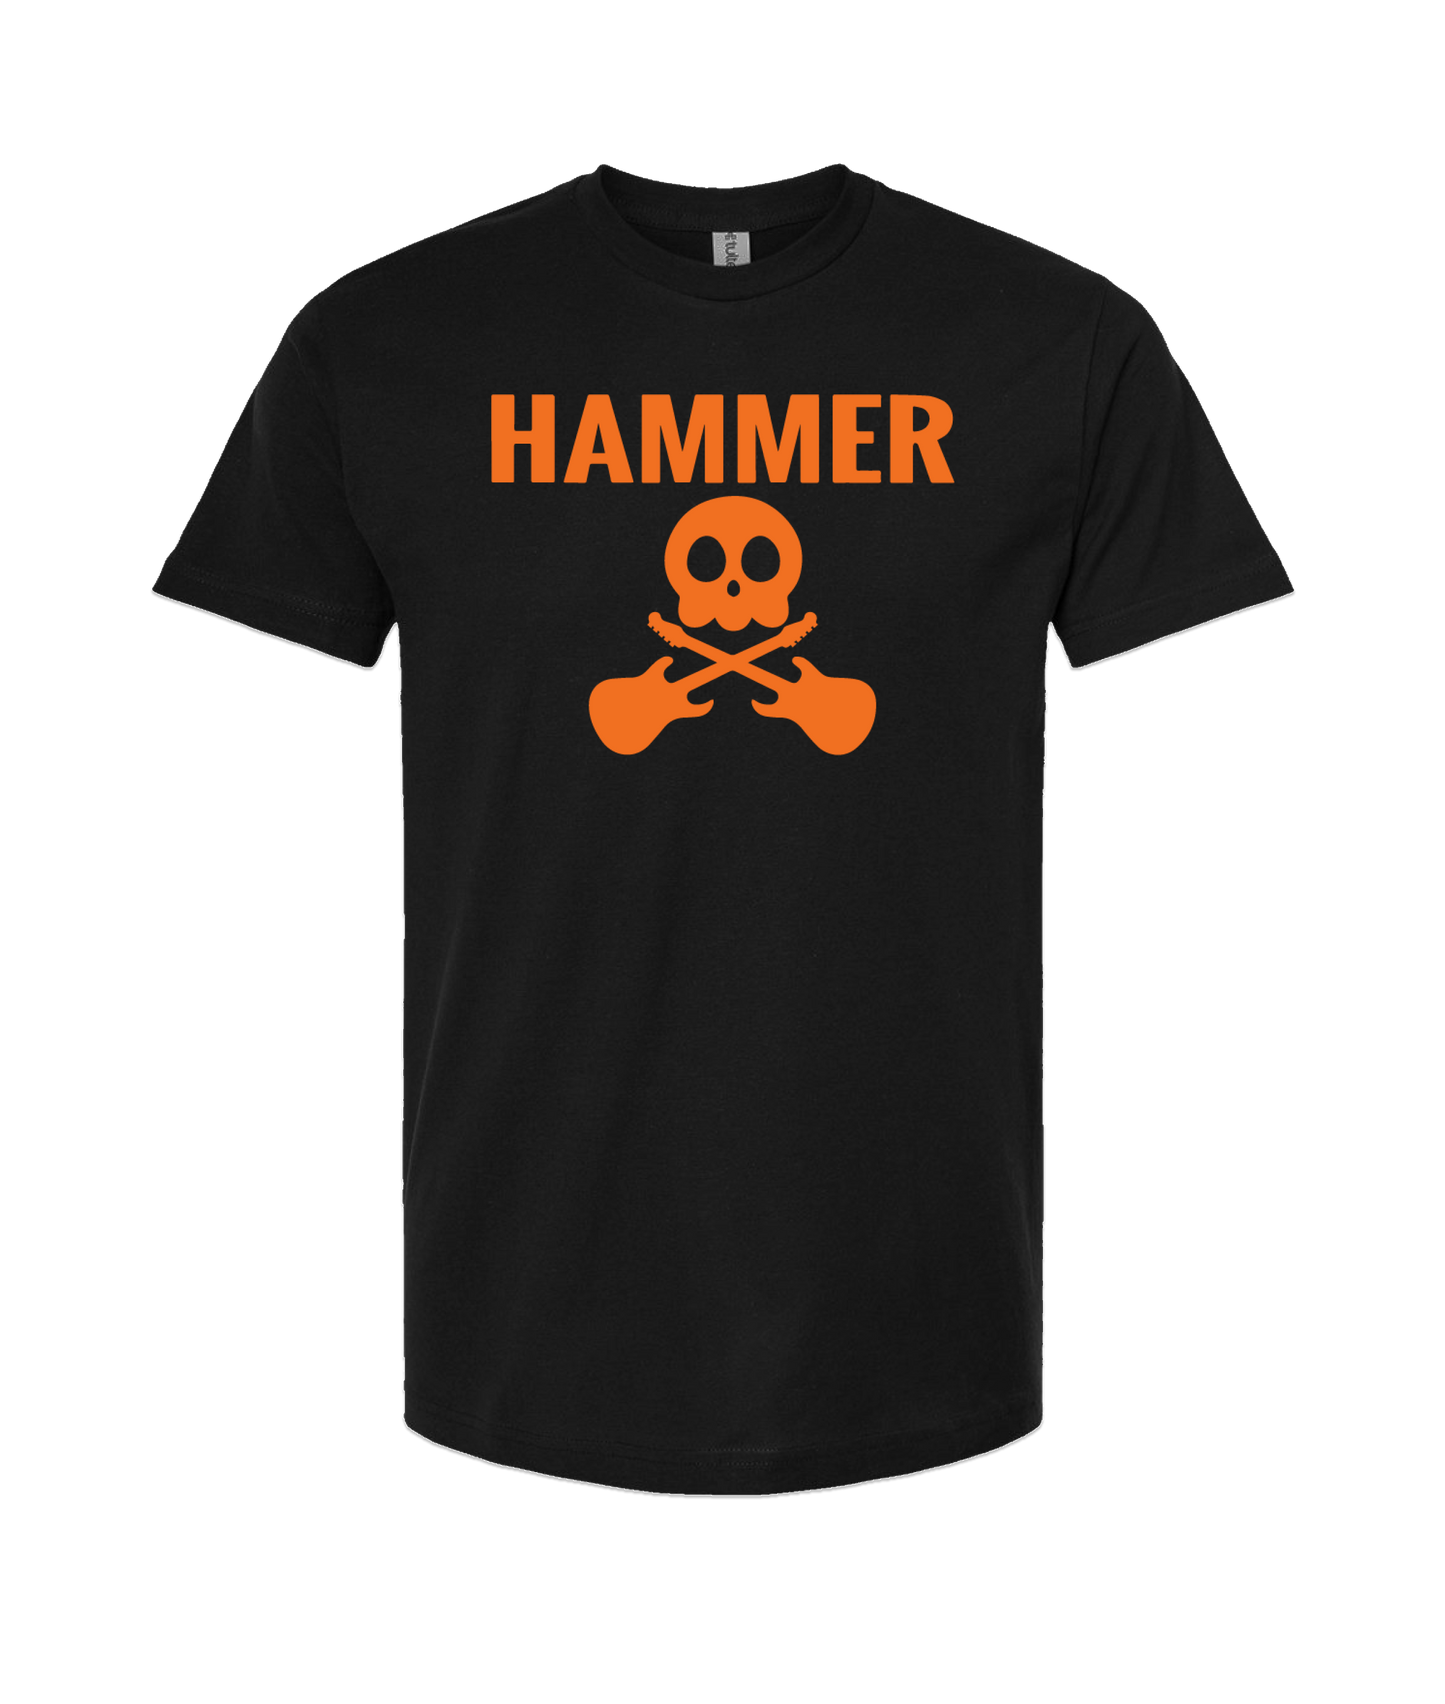 HAMMER - Logo - Black T Shirt